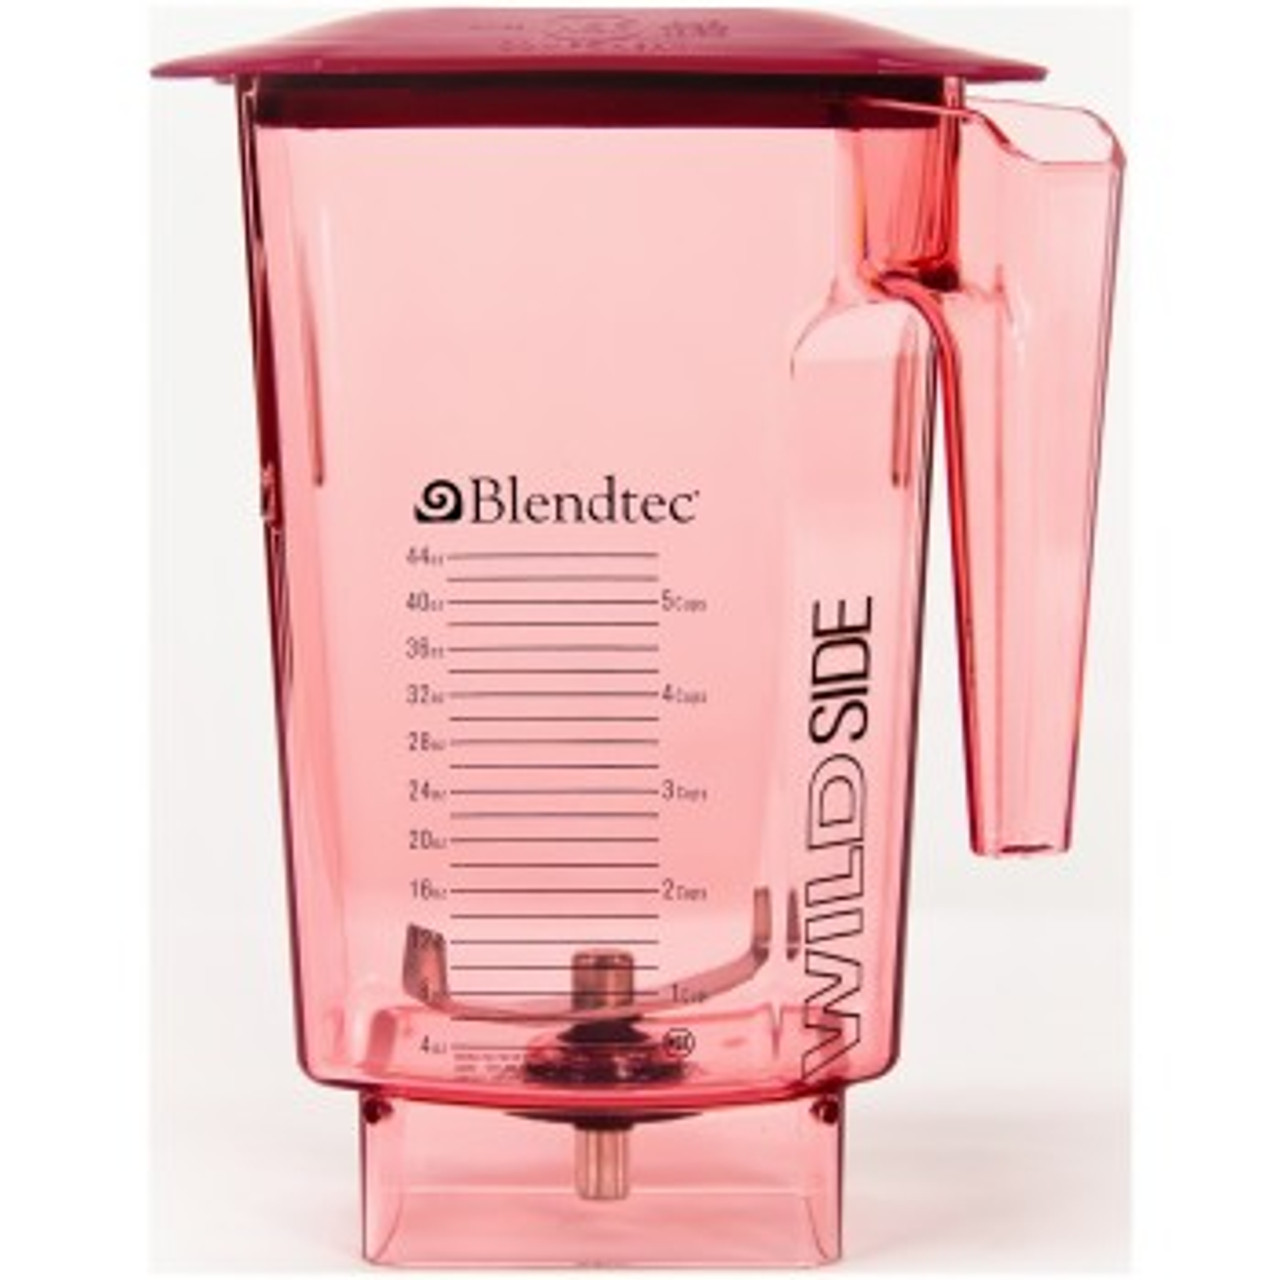 Blendtec Commercial Fourside Blender Jar